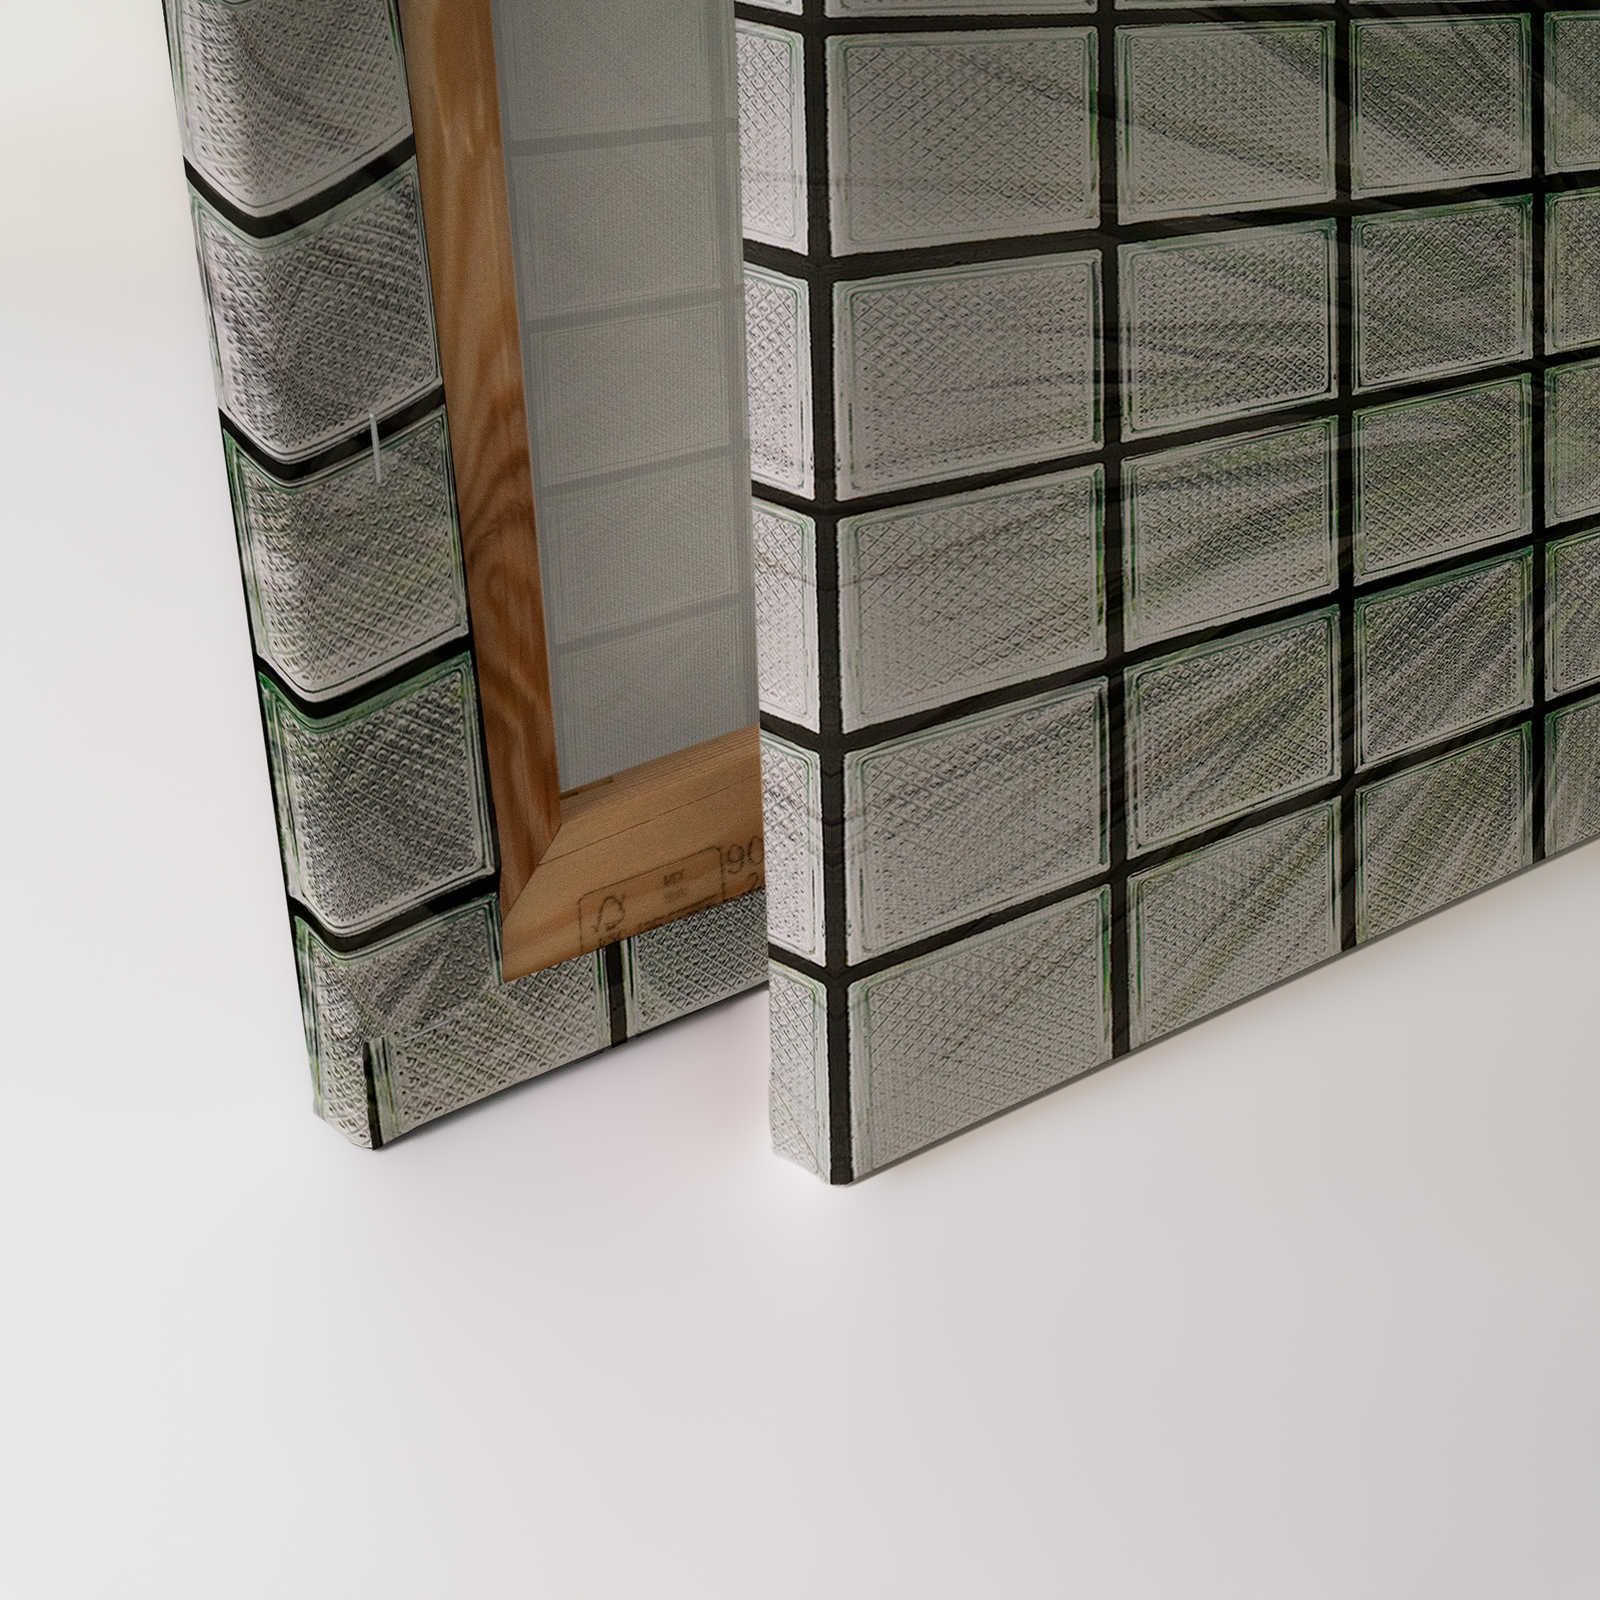             Green House 1 - Toile Palmiers & briques de verre - 0,90 m x 0,60 m
        